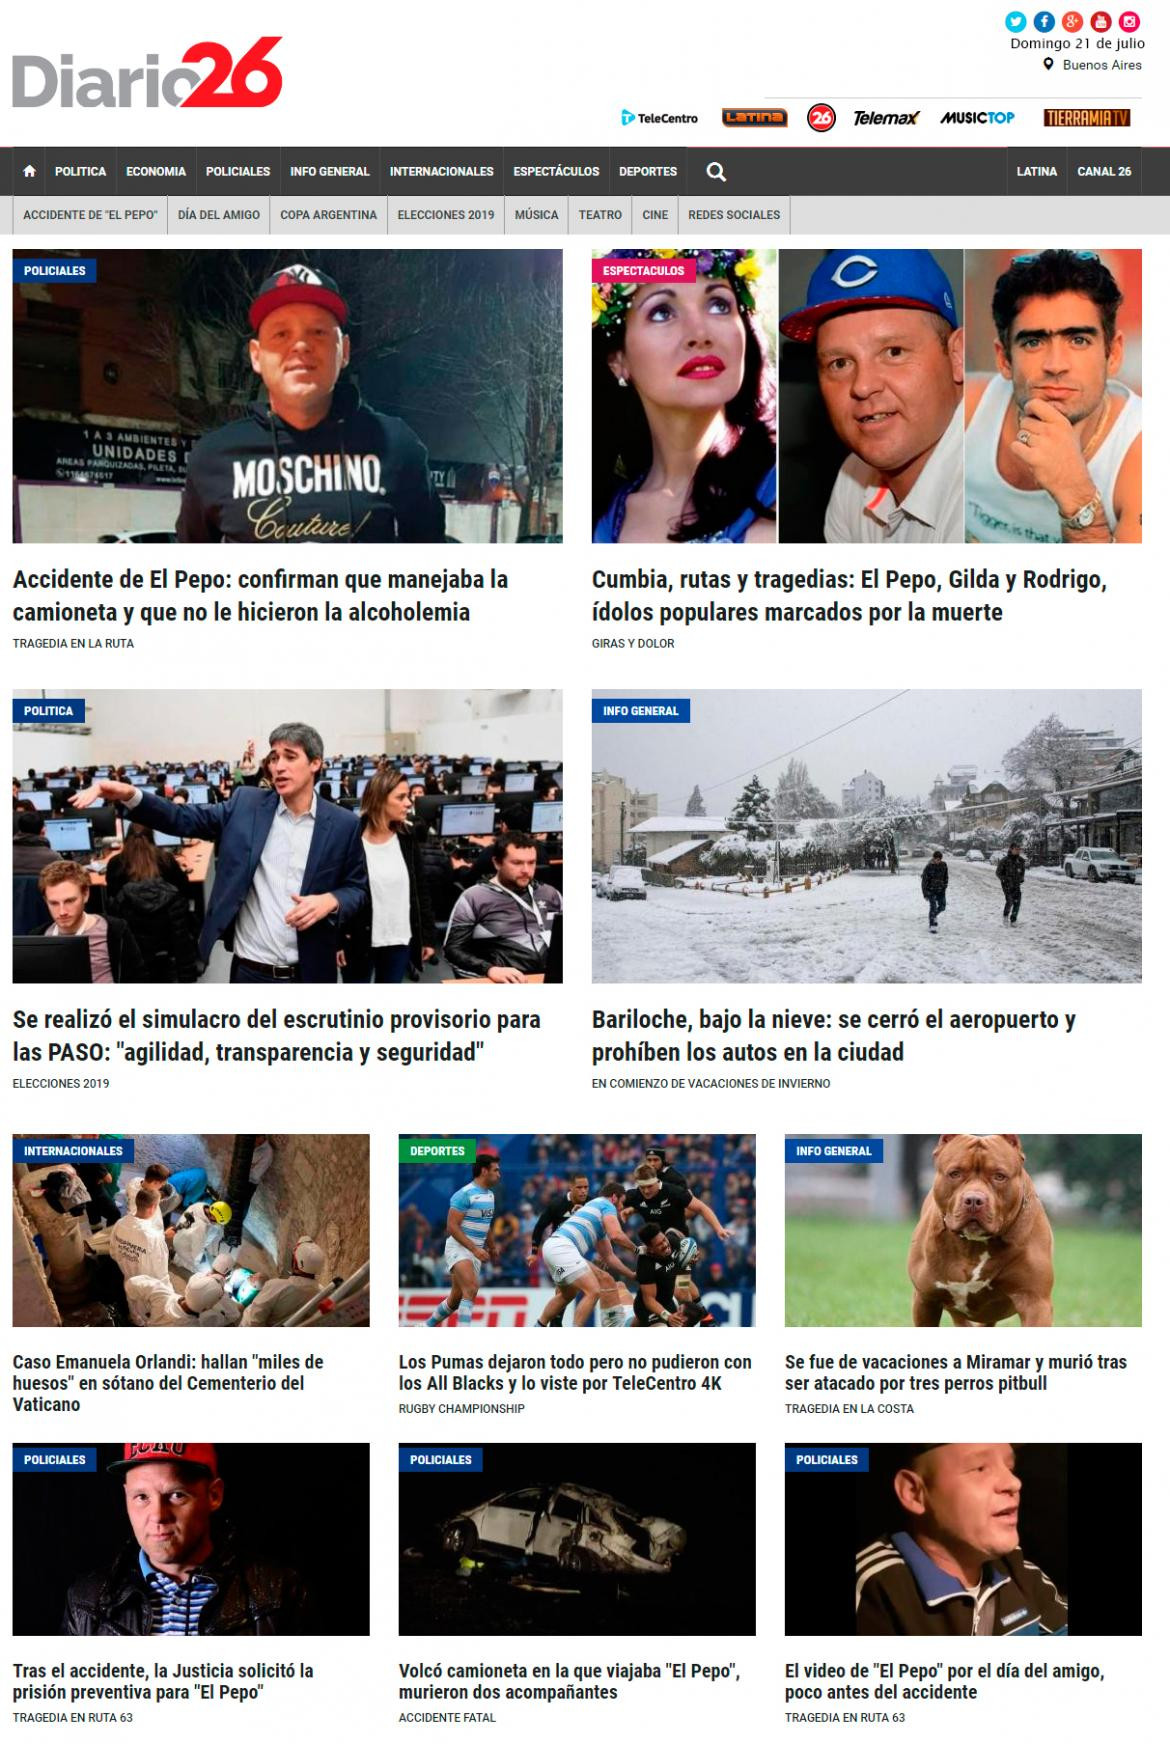 Tapas de diarios, Diario 26, domingo 21 de julio de 2019